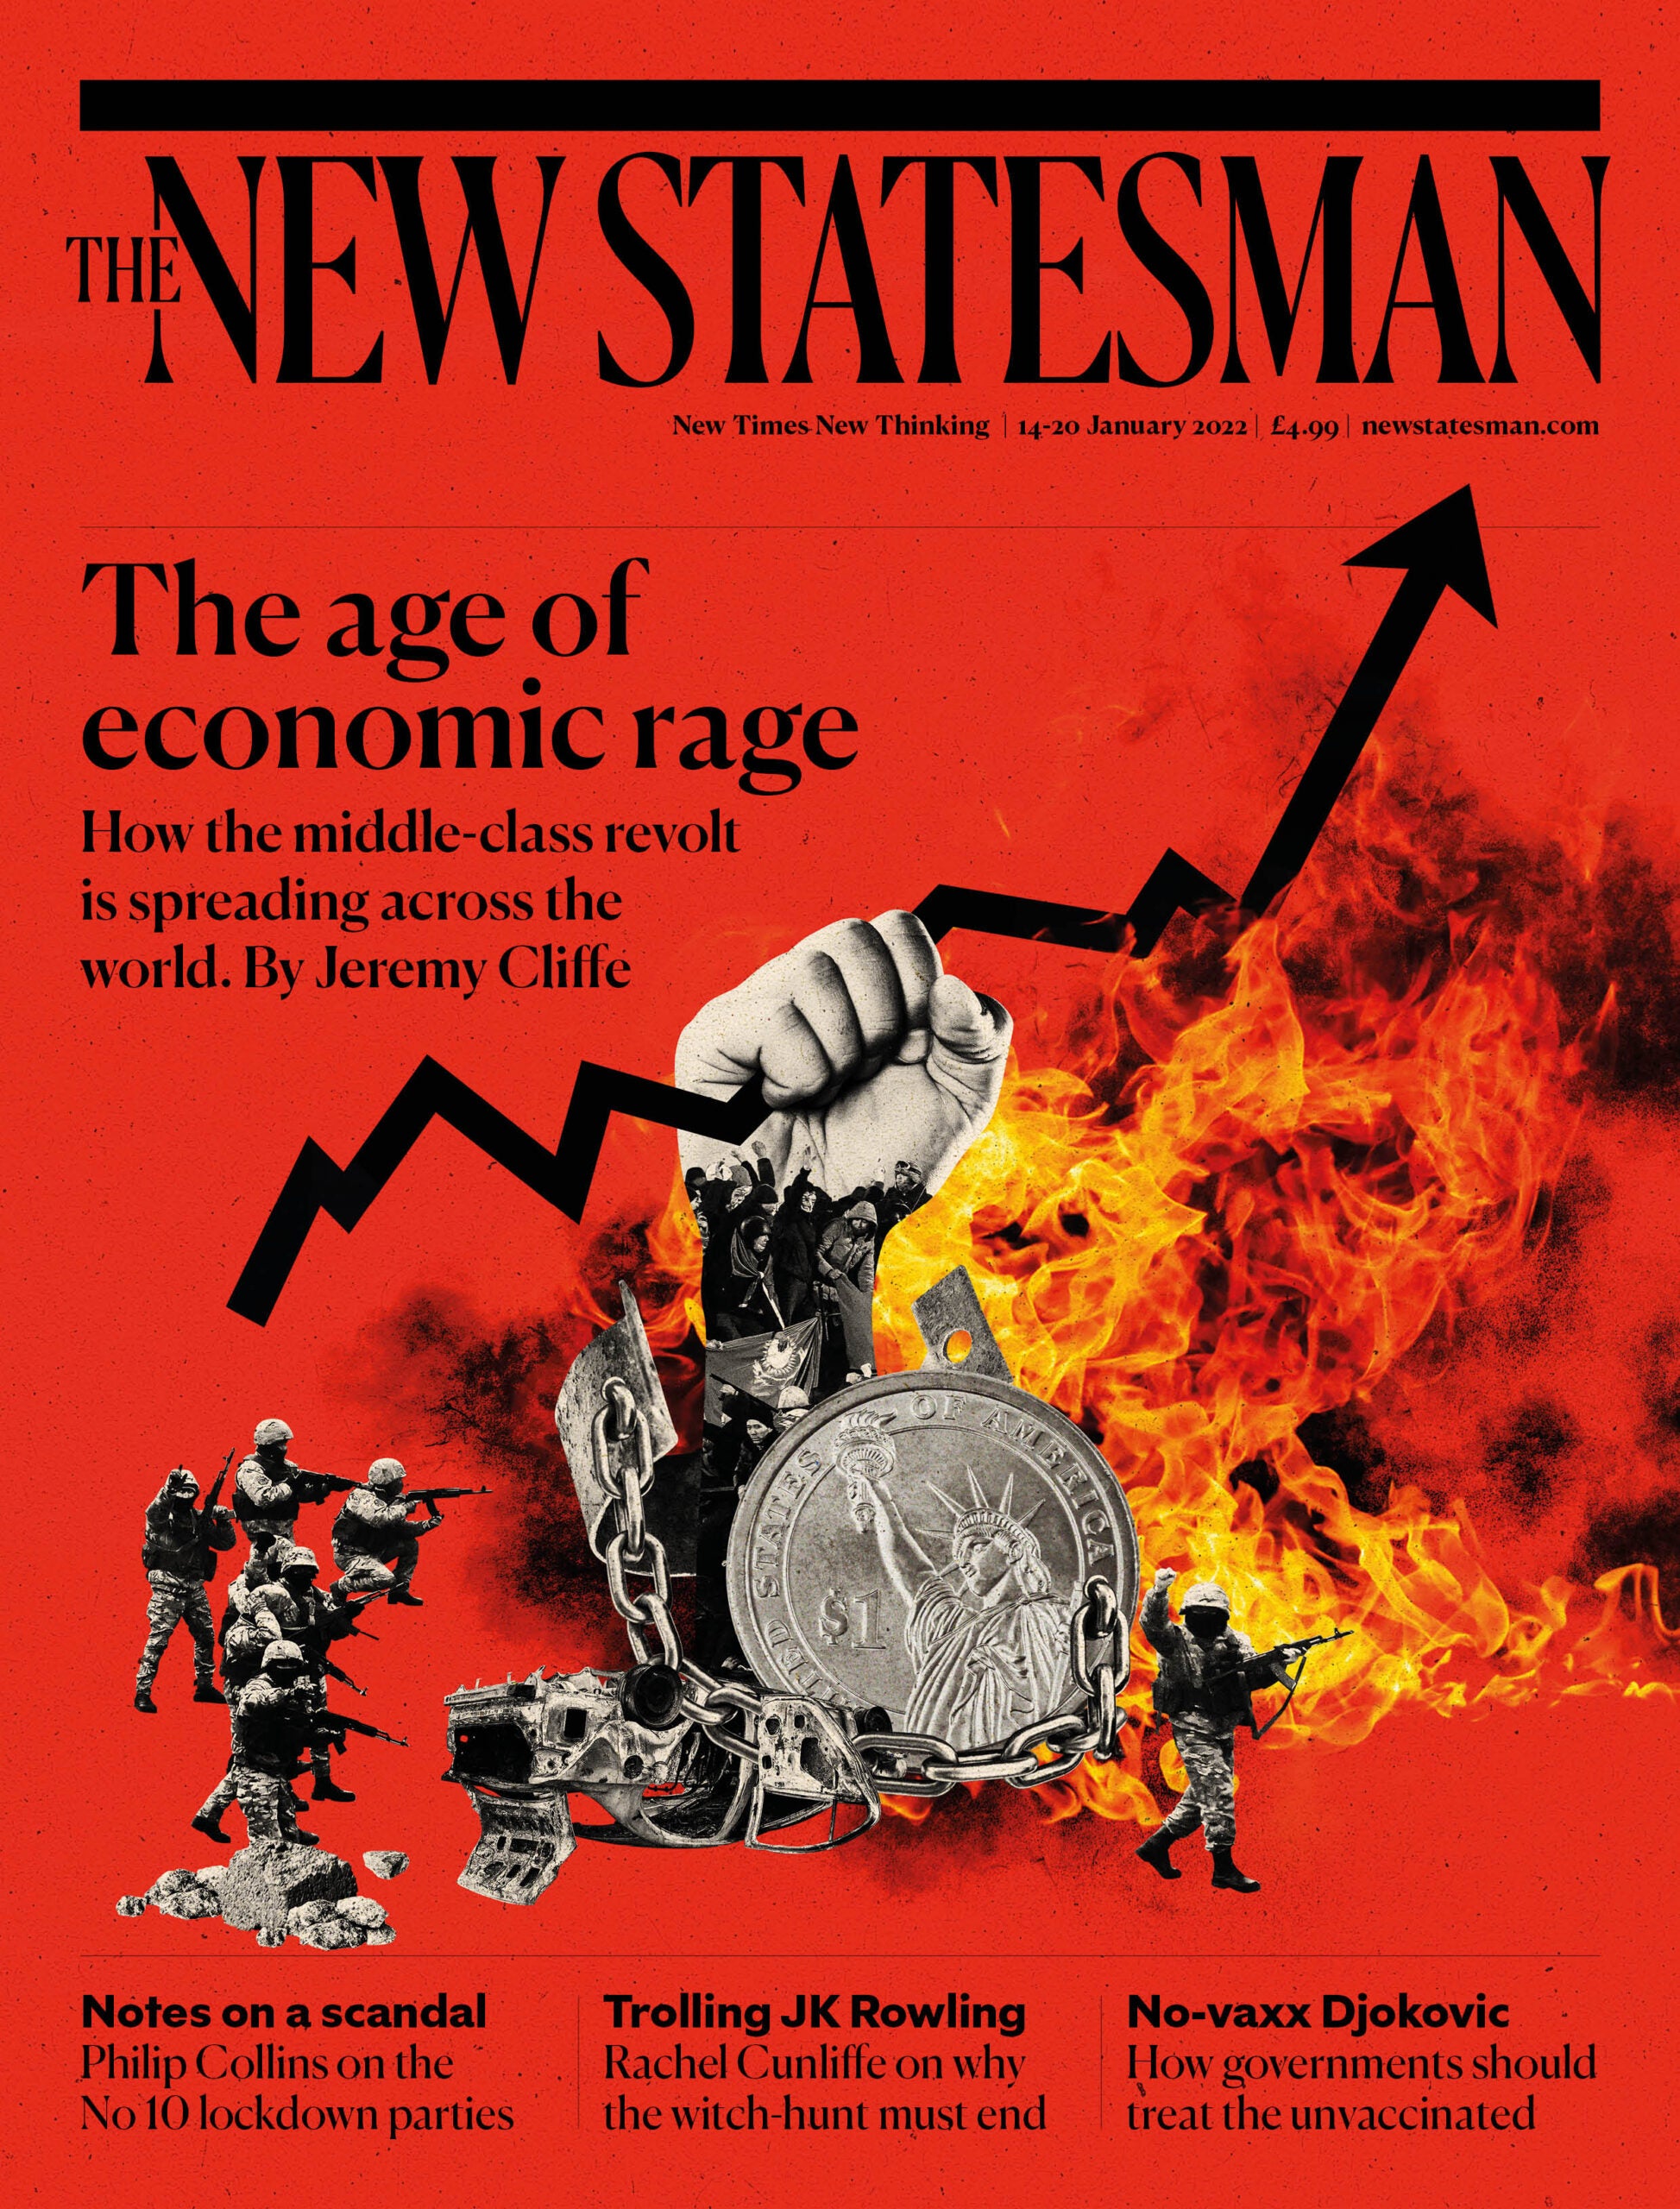 The age of economic rage